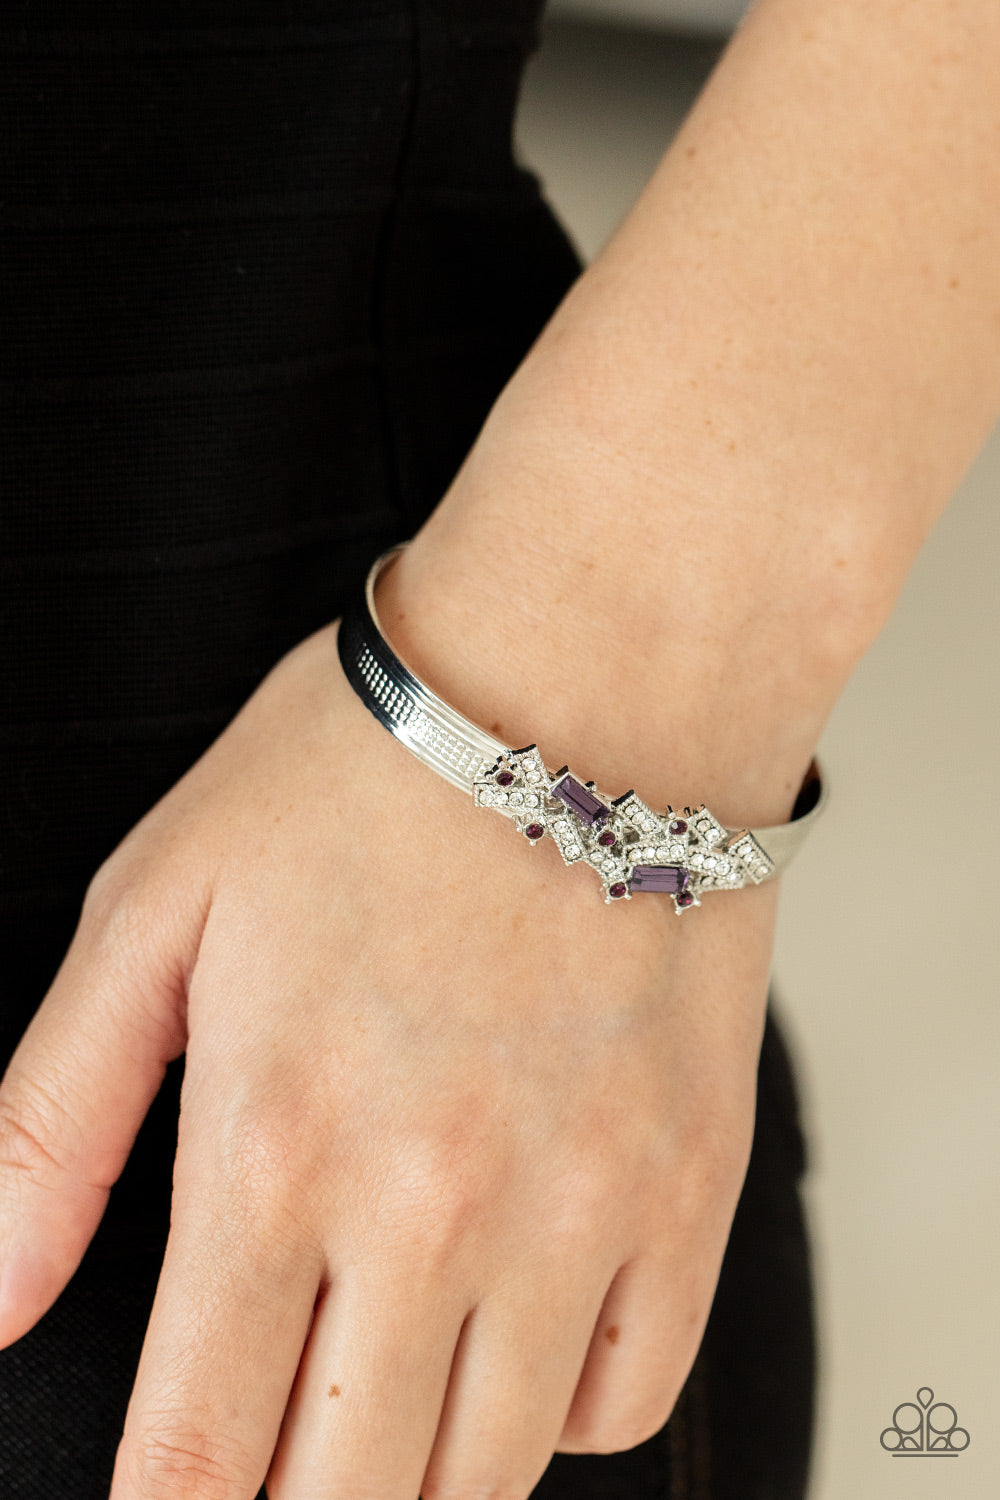 A Chic Clique Purple-Bracelet